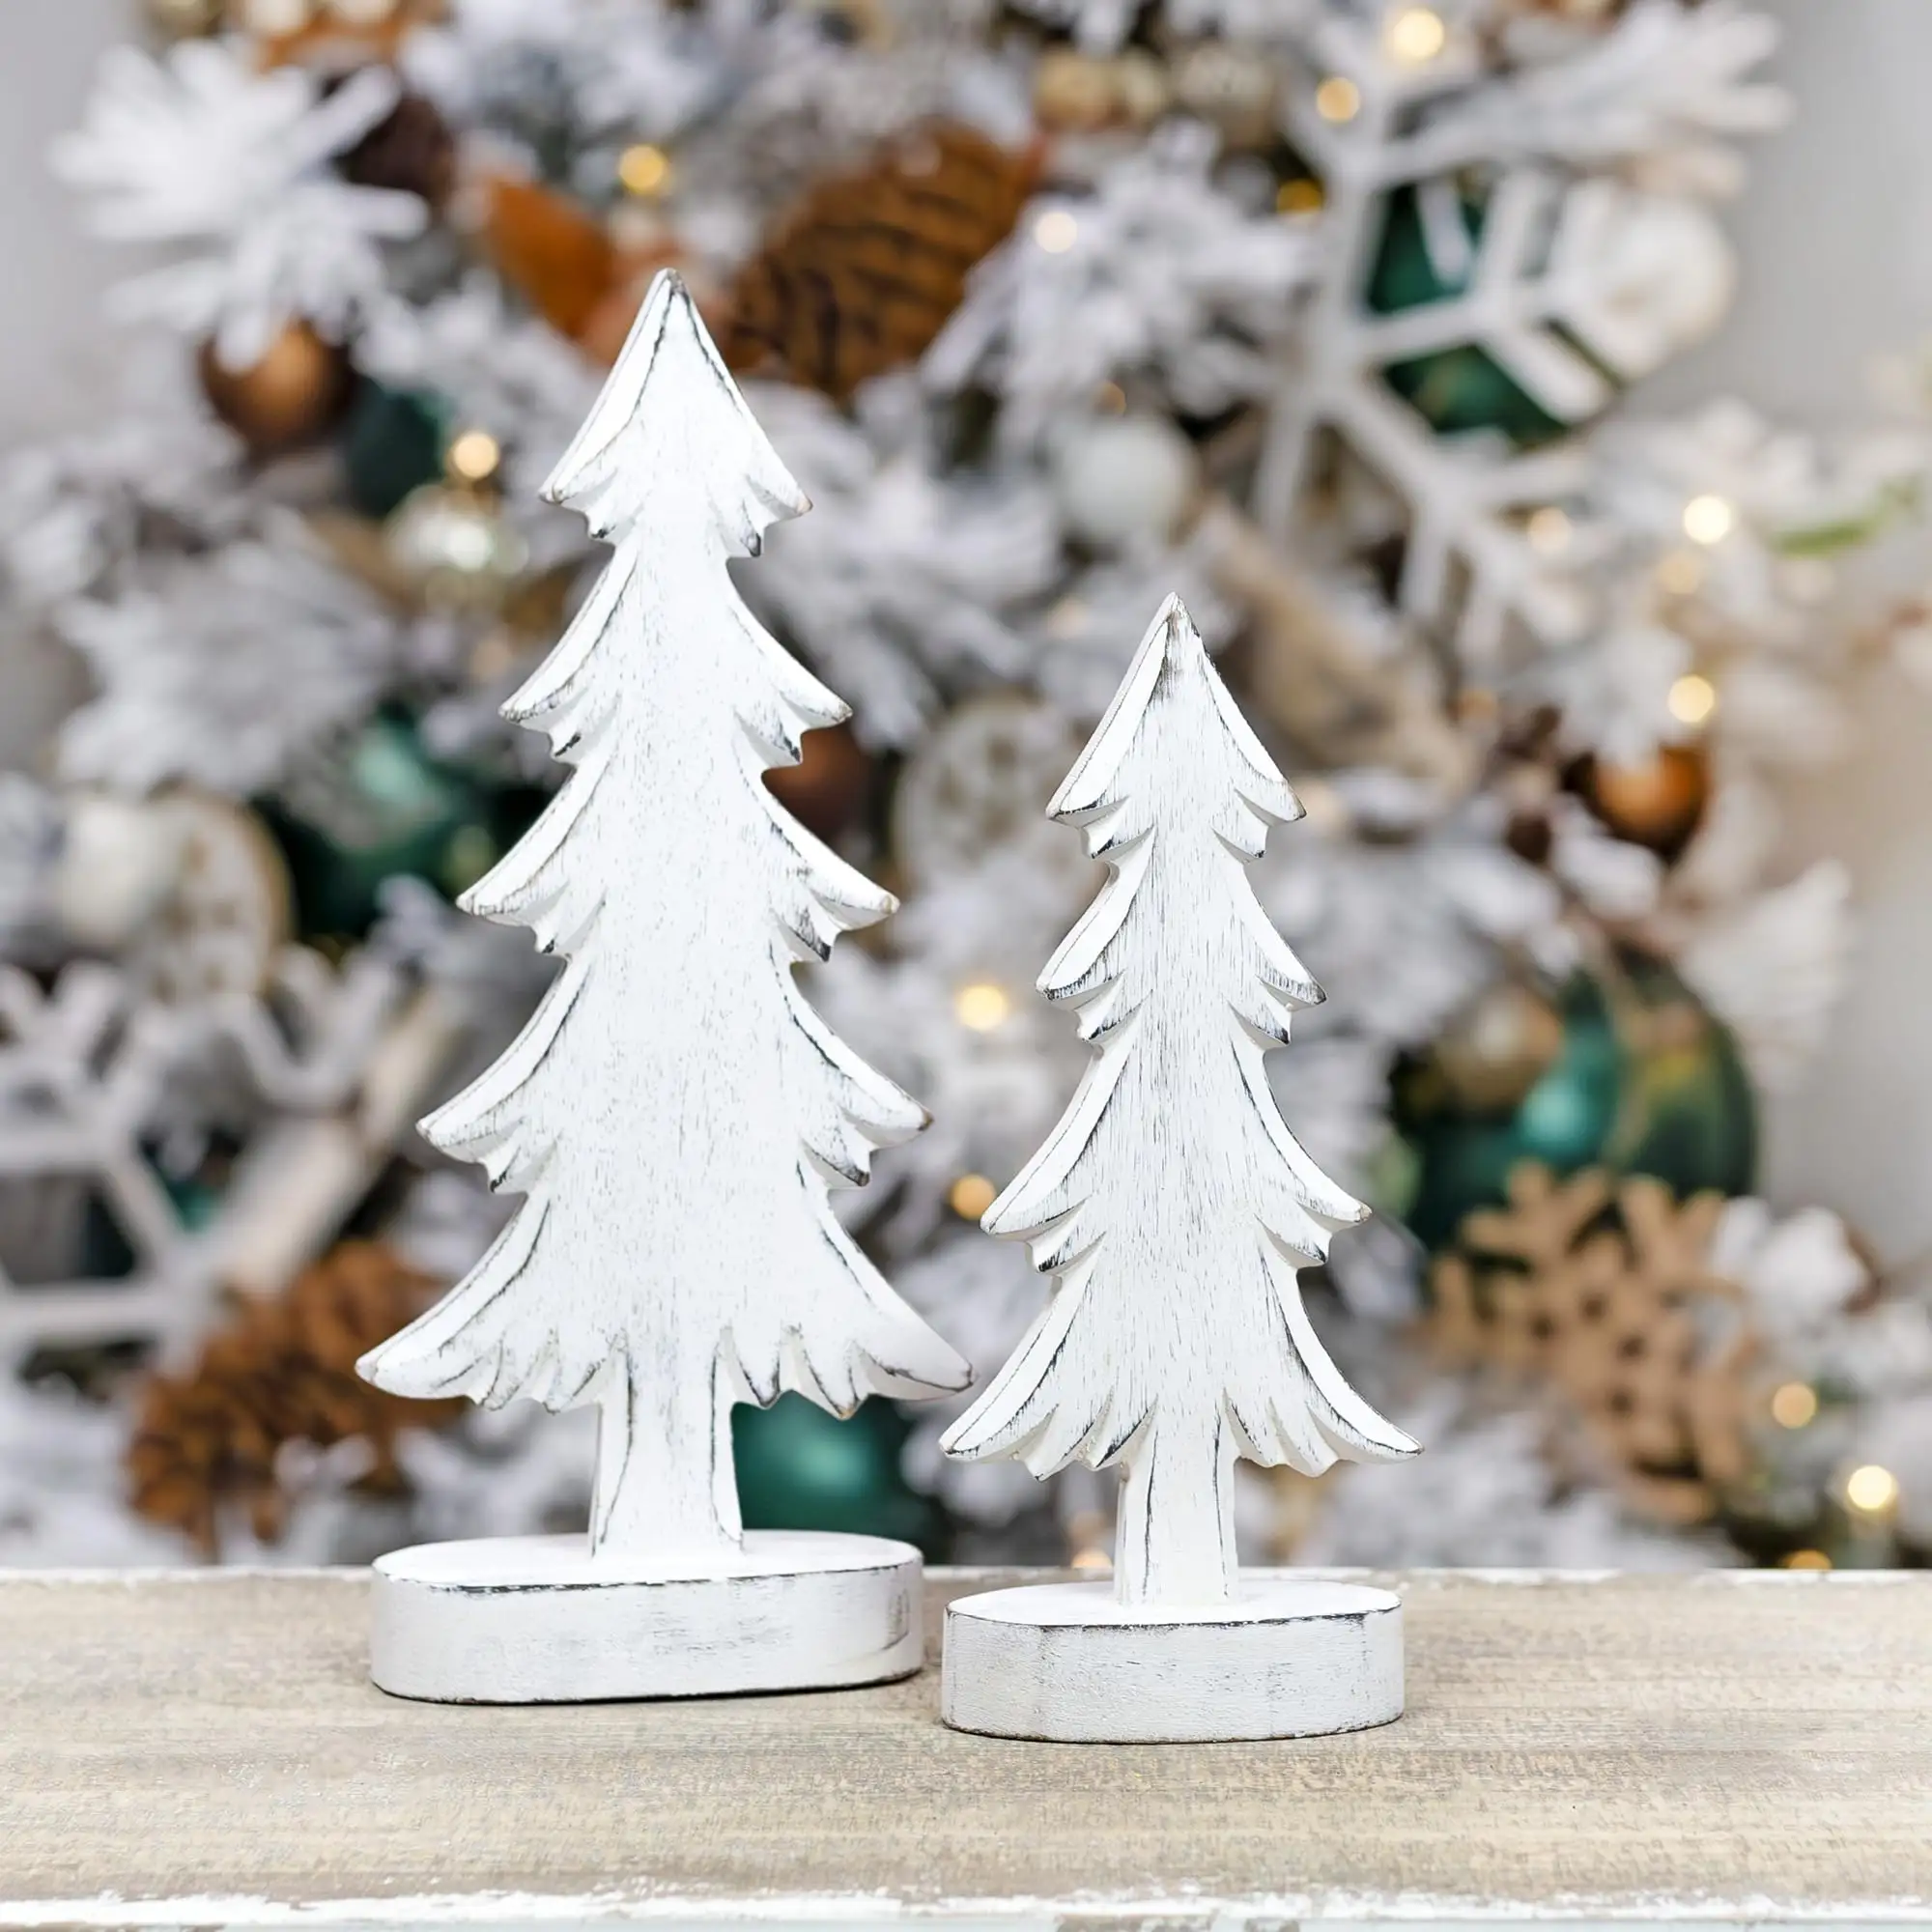 FSC kerajinan dekorasi rumah kreatif Natal, tanda pohon Natal kepingan kayu buatan tangan